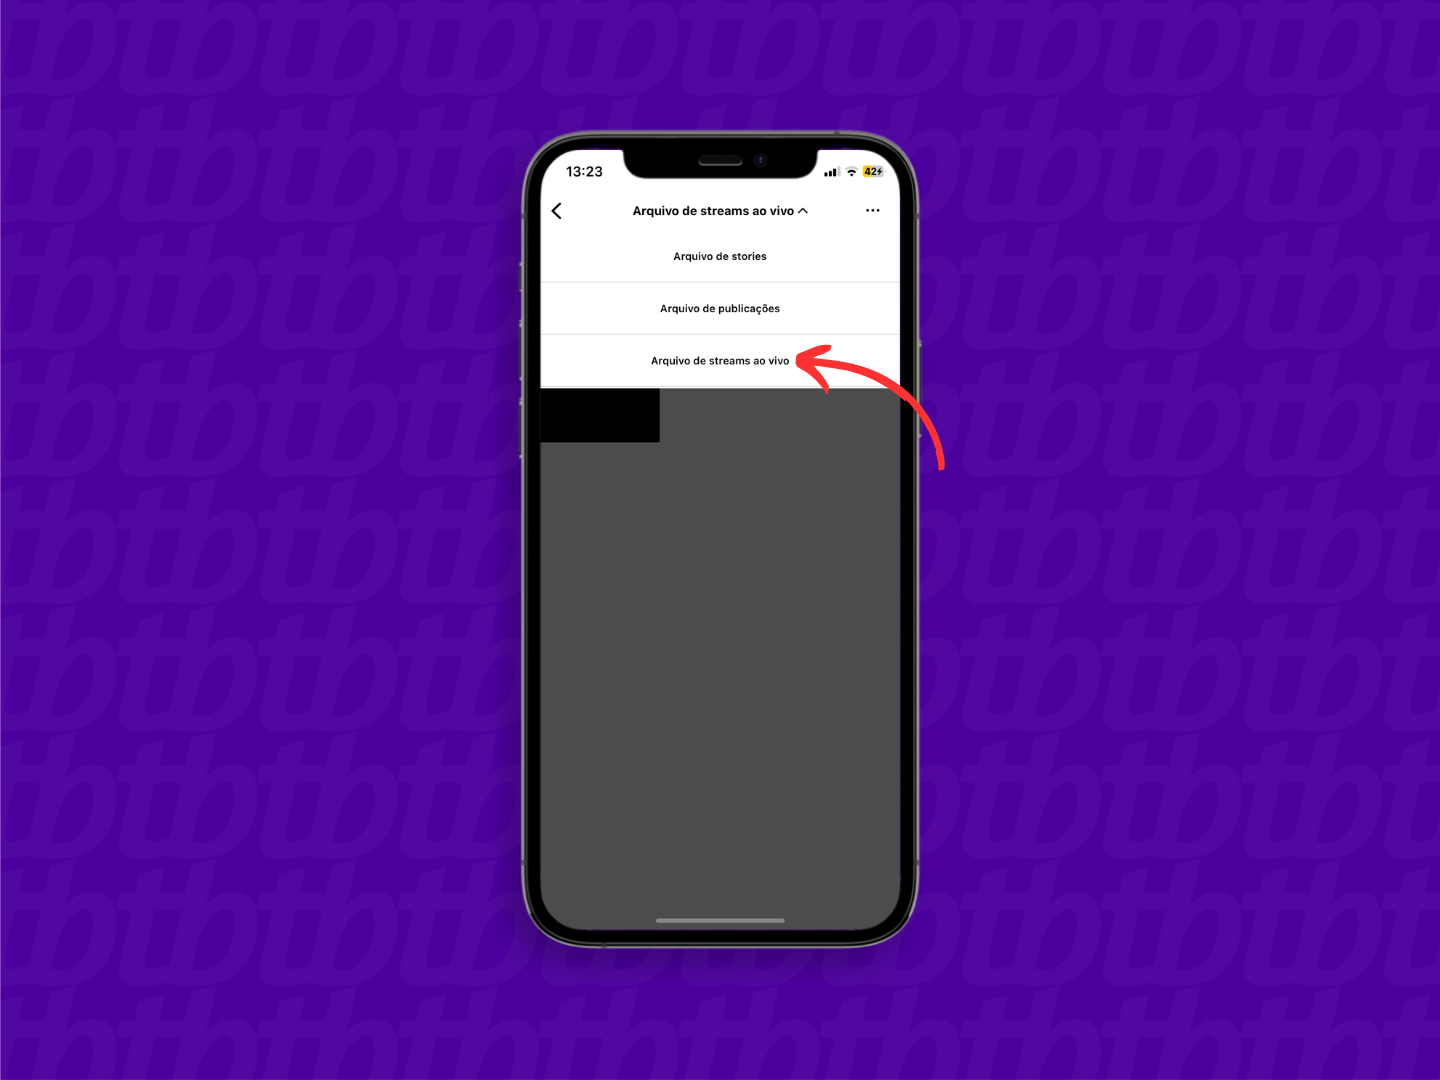 Mockup de celular com print de tela do Instagram que indica o menu "Arquivo de streams ao vivo" usado para acessar lives salvas automaticamente pela rede social.